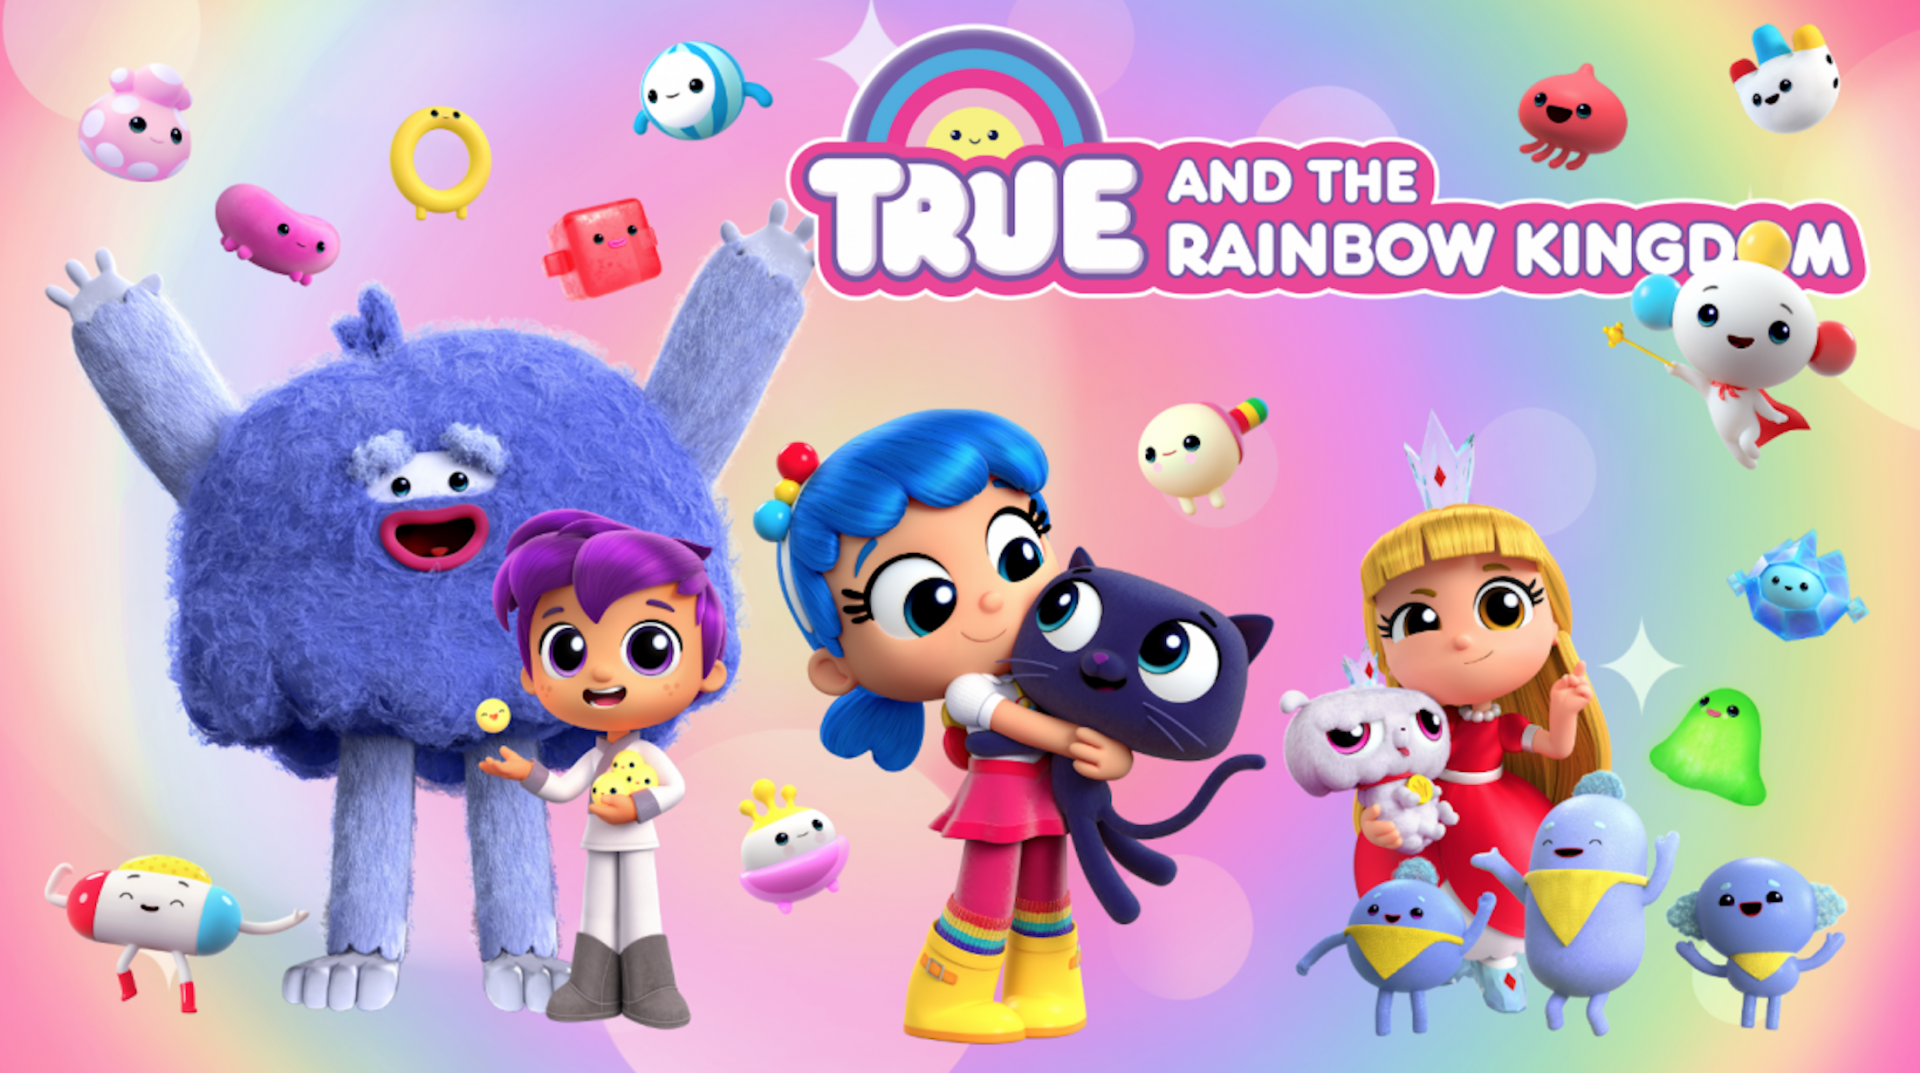 小真与彩虹王国 英文版 第4季《True and the Rainbow Kingdom》在线观看